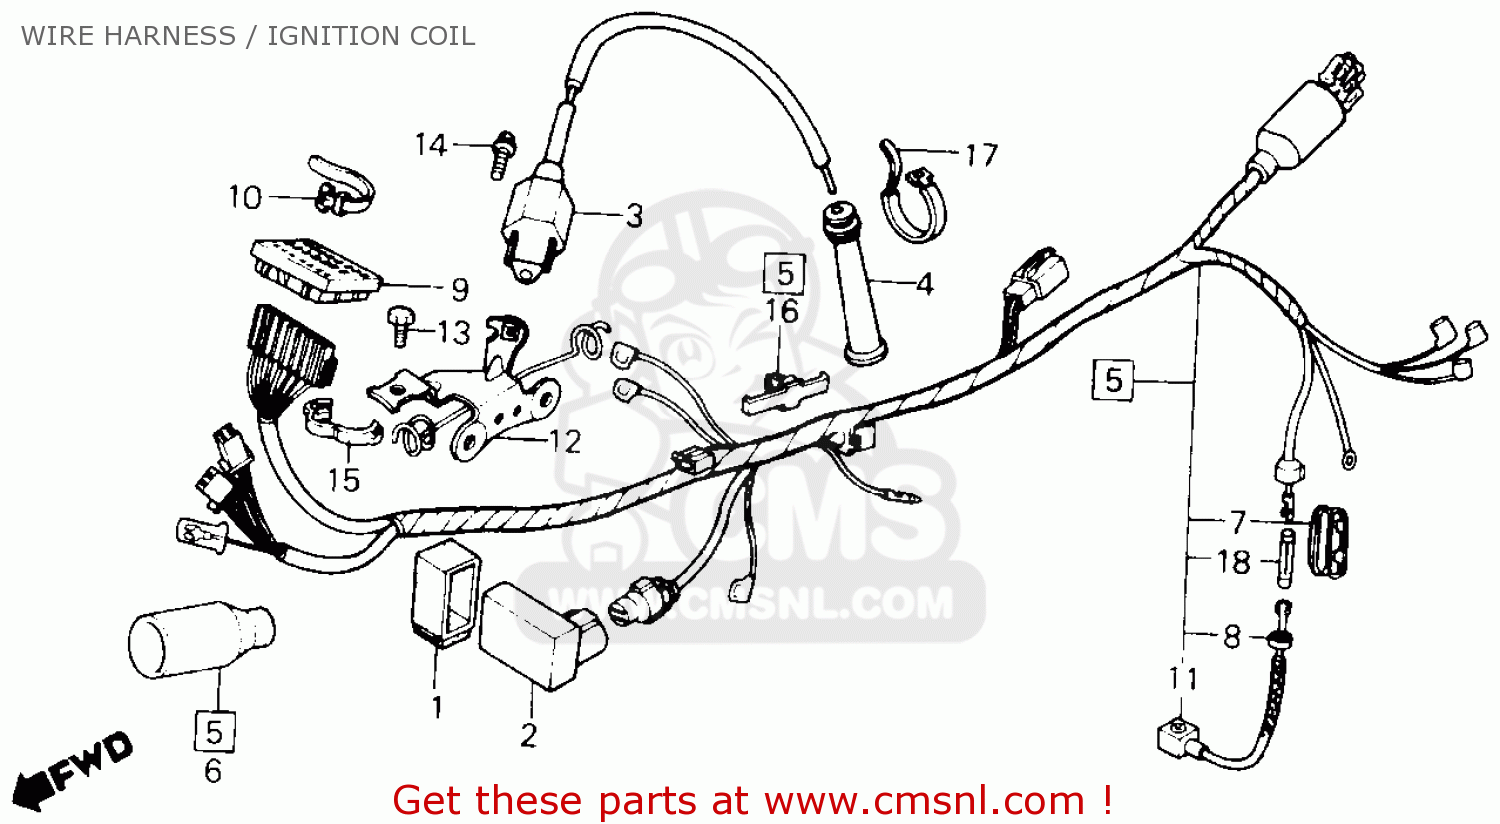 1983 Honda xl600r wiring diagram